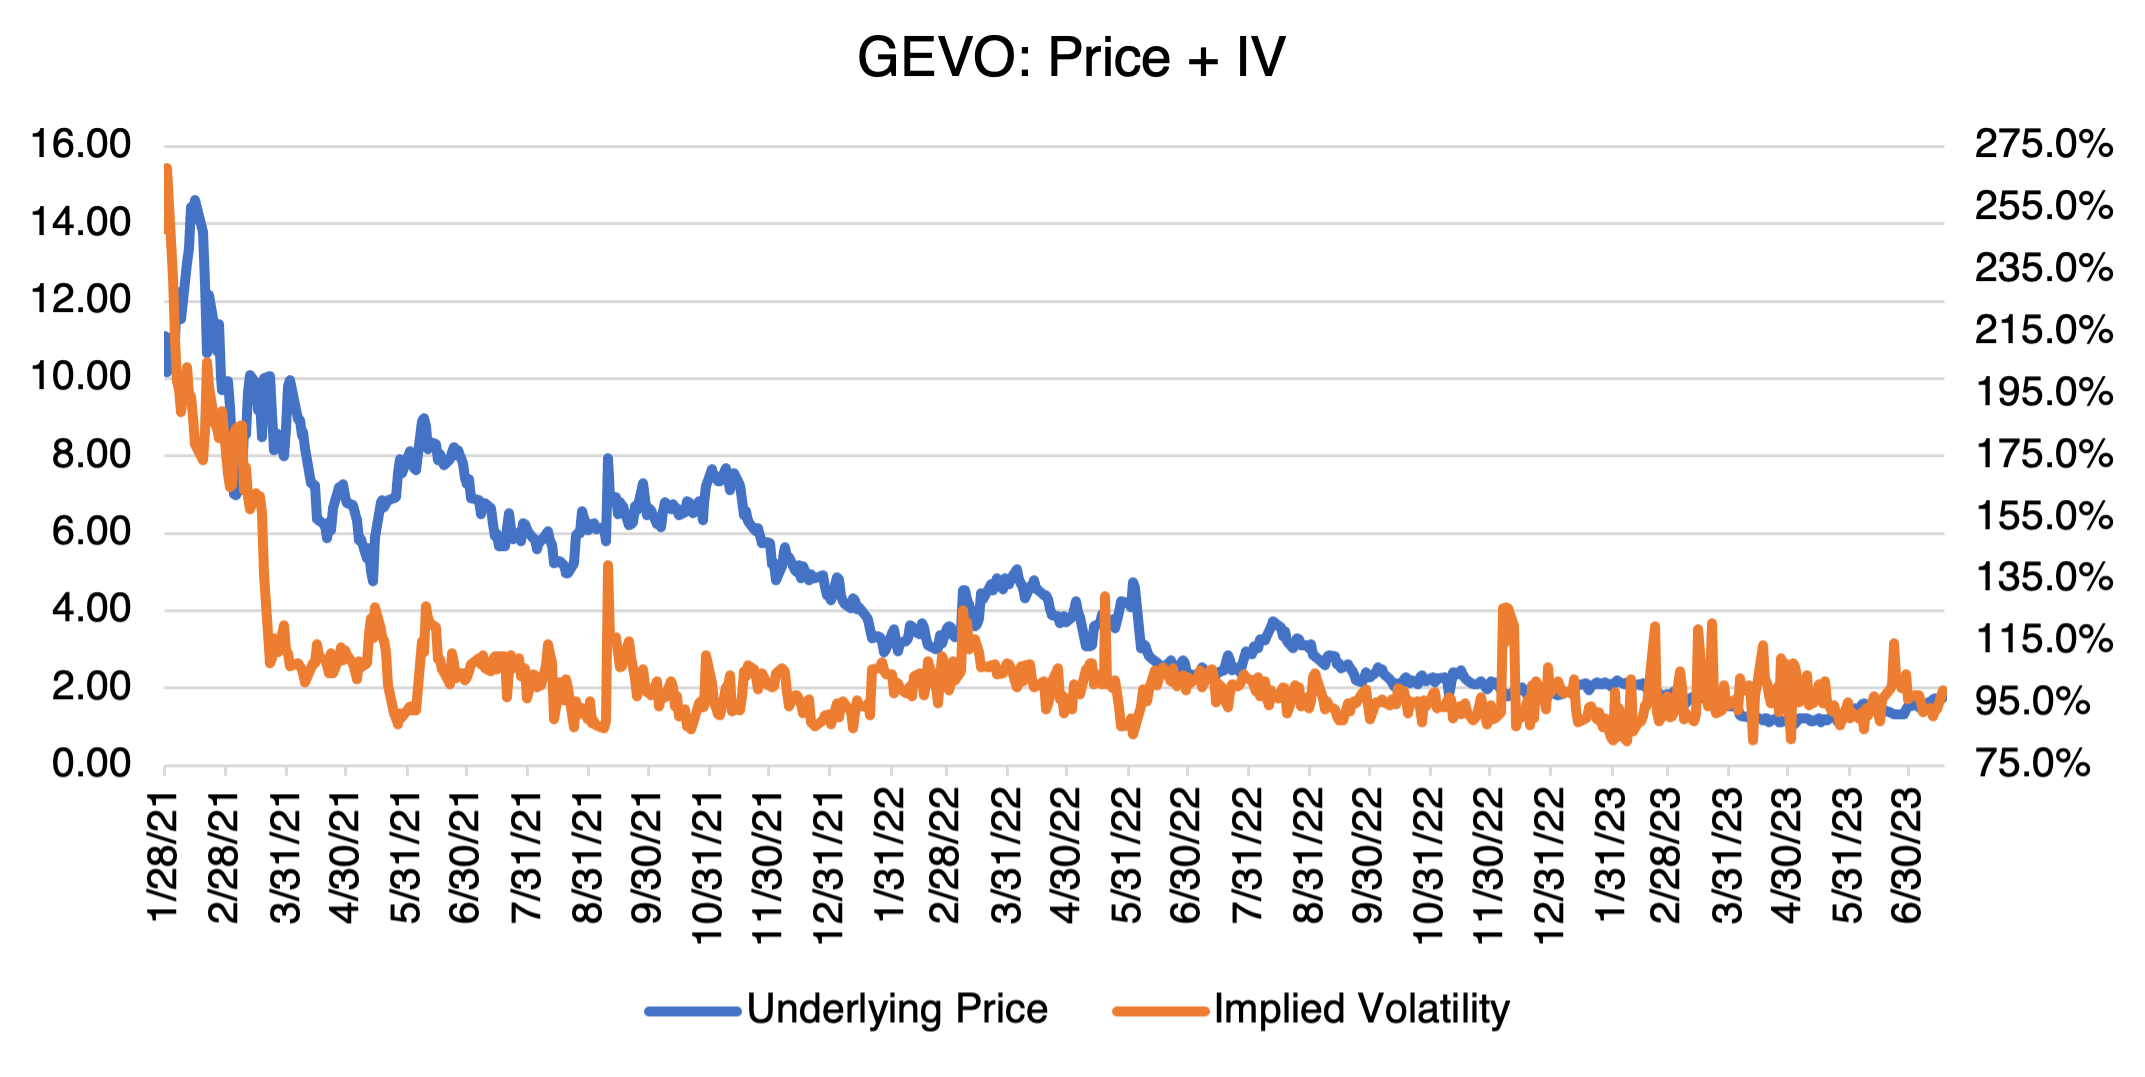 GEVO: Price + IV